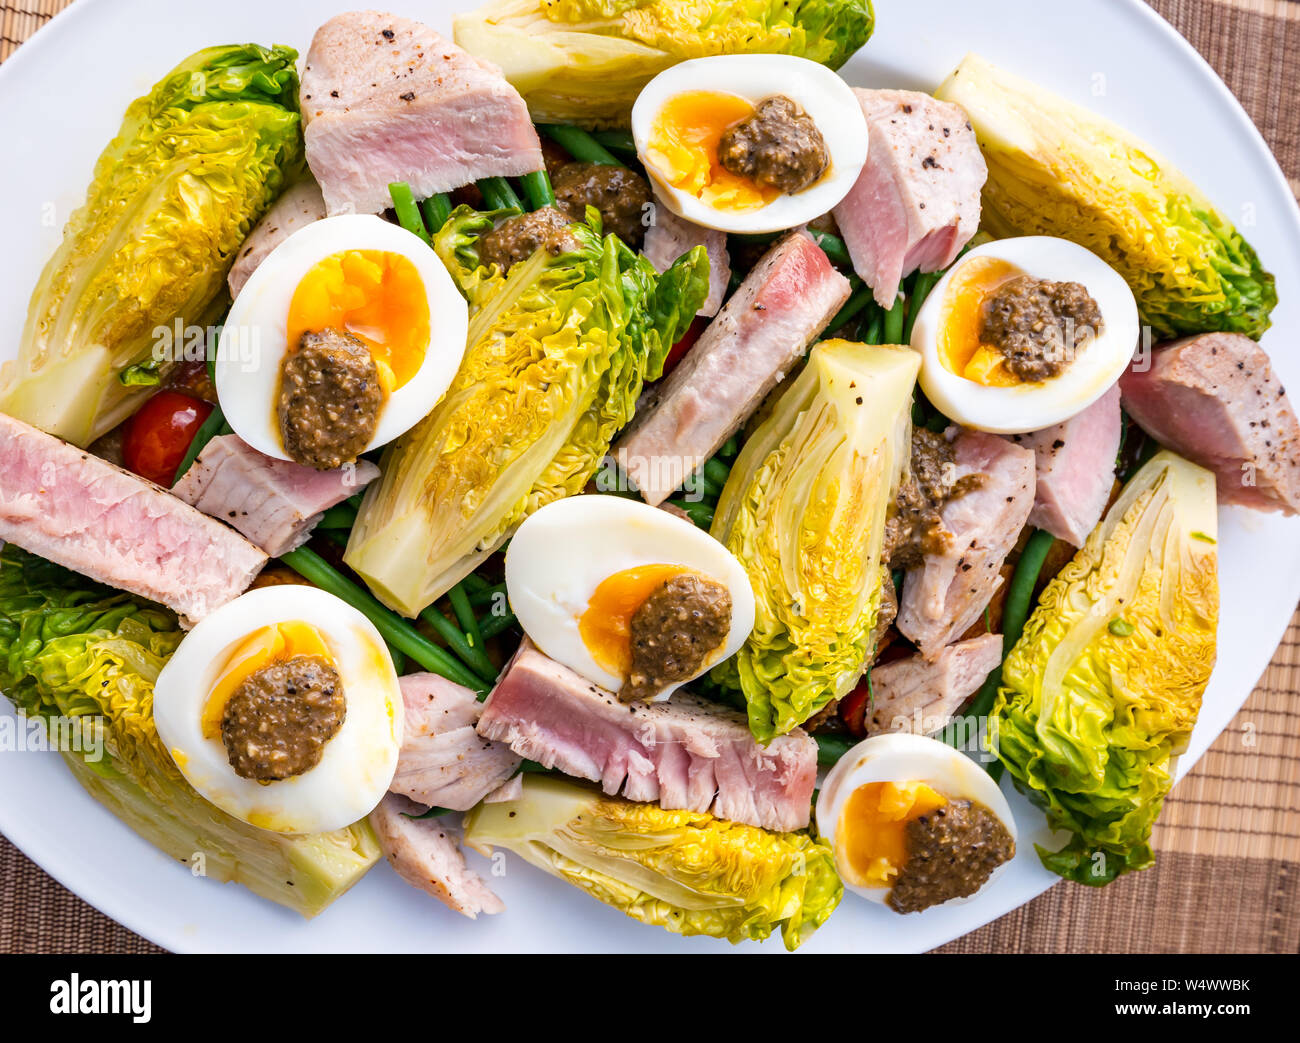 Version de salade niçoise sur plaque blanche. Oeufs durs et d'olive, vinaigrette laitue gem bébé, des pommes de terre et les tranches de steak de thon Banque D'Images